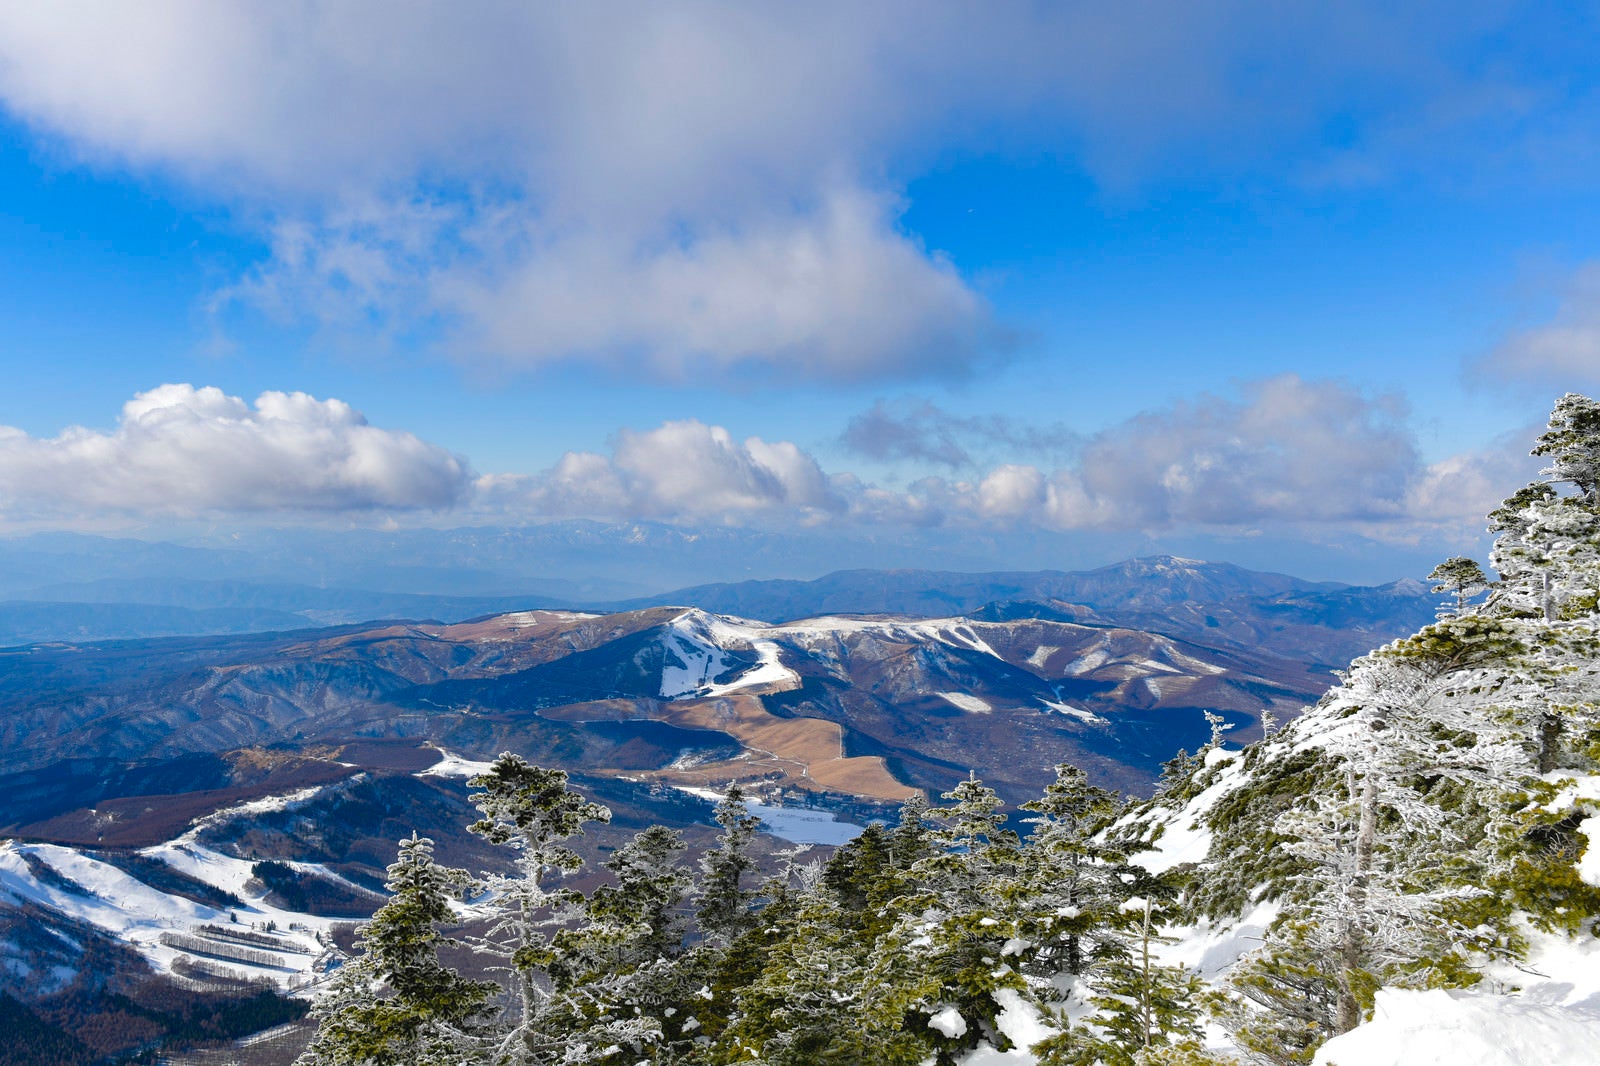 「蓼科山から見える霧ヶ峰と美ヶ原方面」の写真